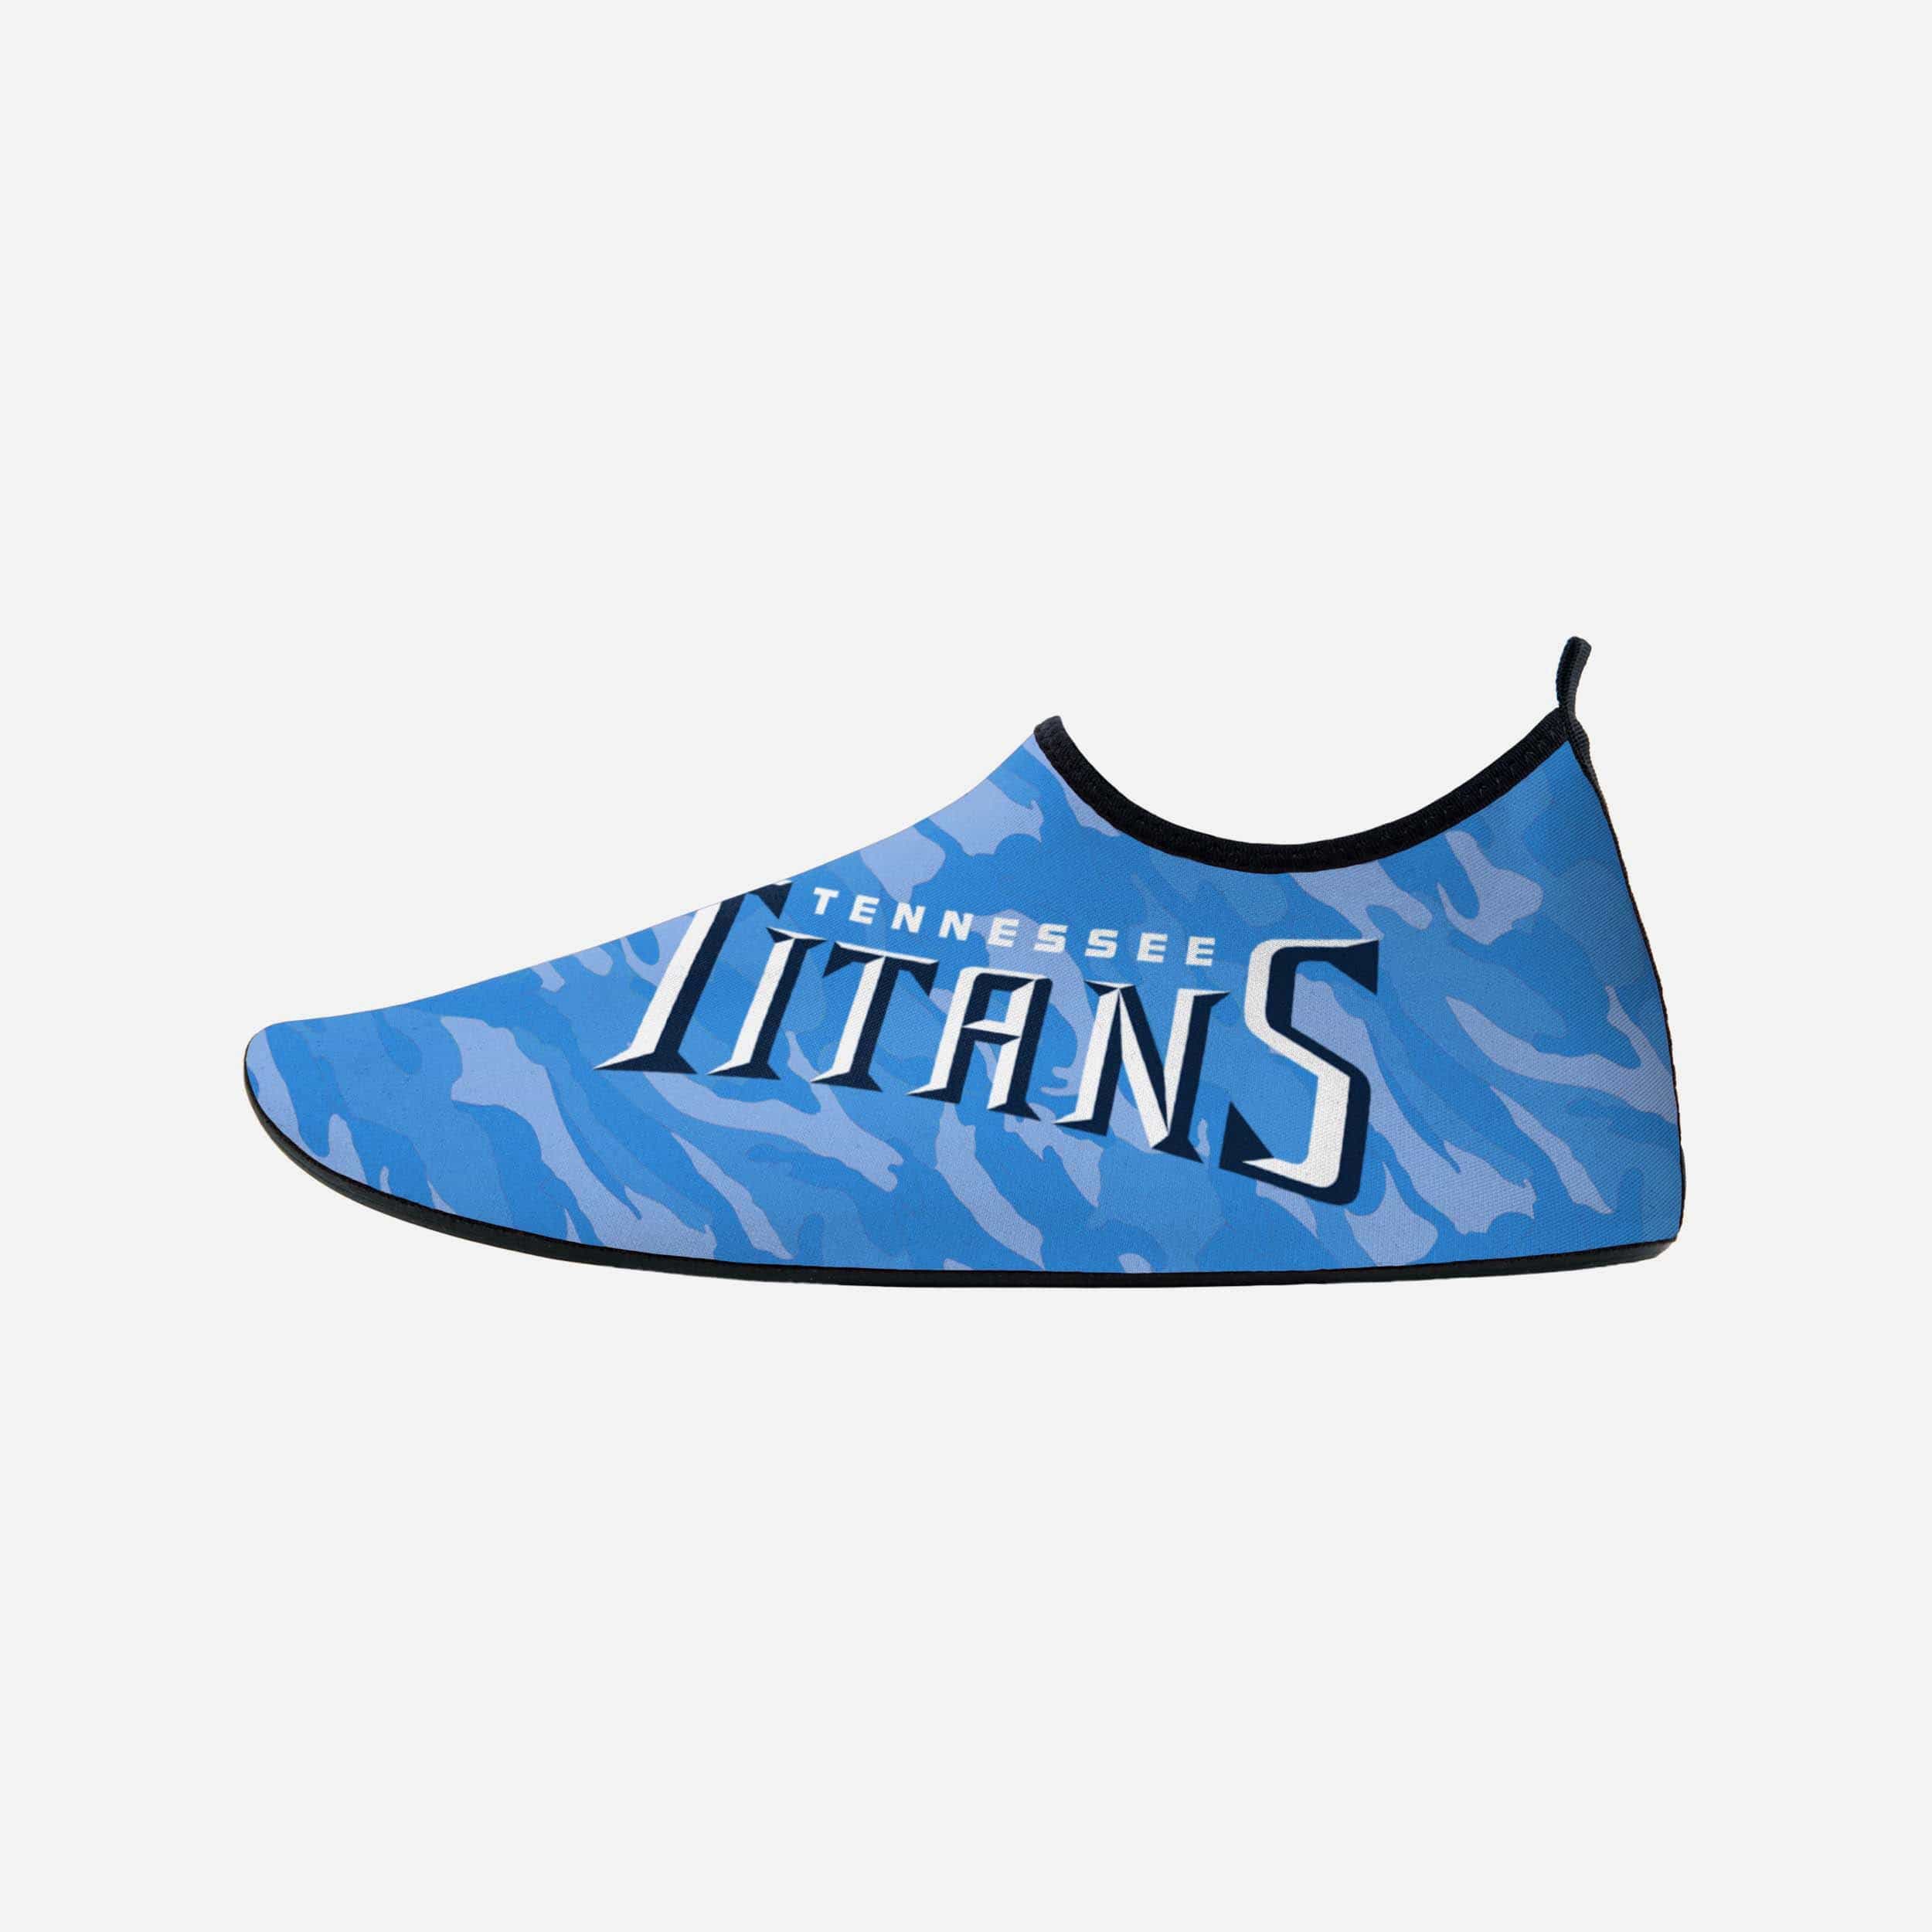 FOCO Tennessee Titans Camo Water Shoe - M - Men